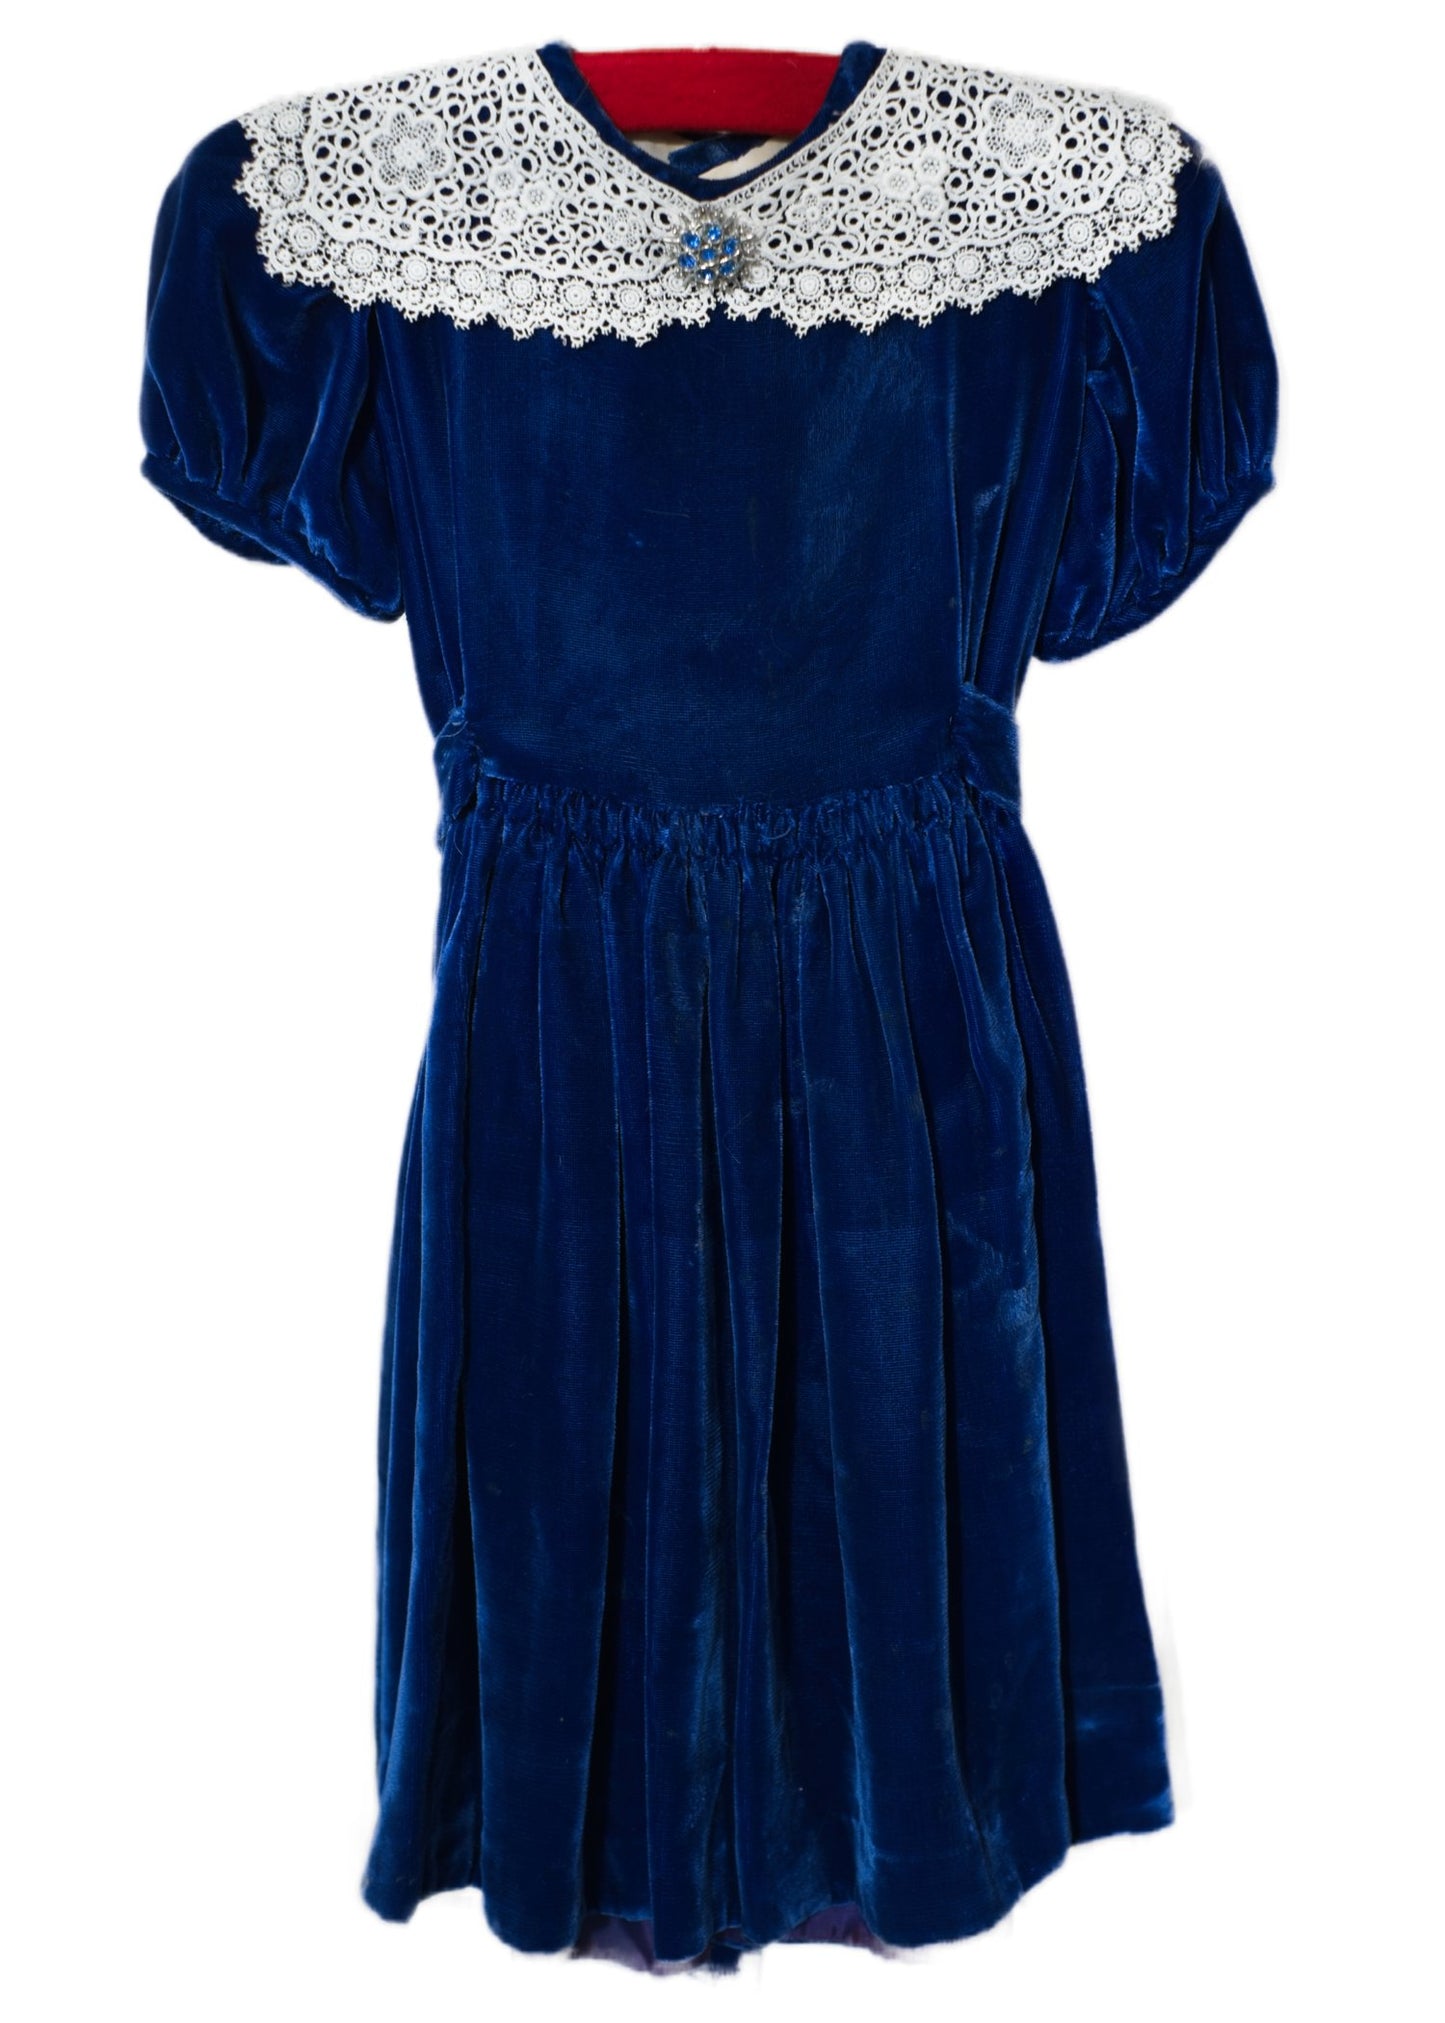 Vintage Little Girl's Blue Velvet Party Dress • Children